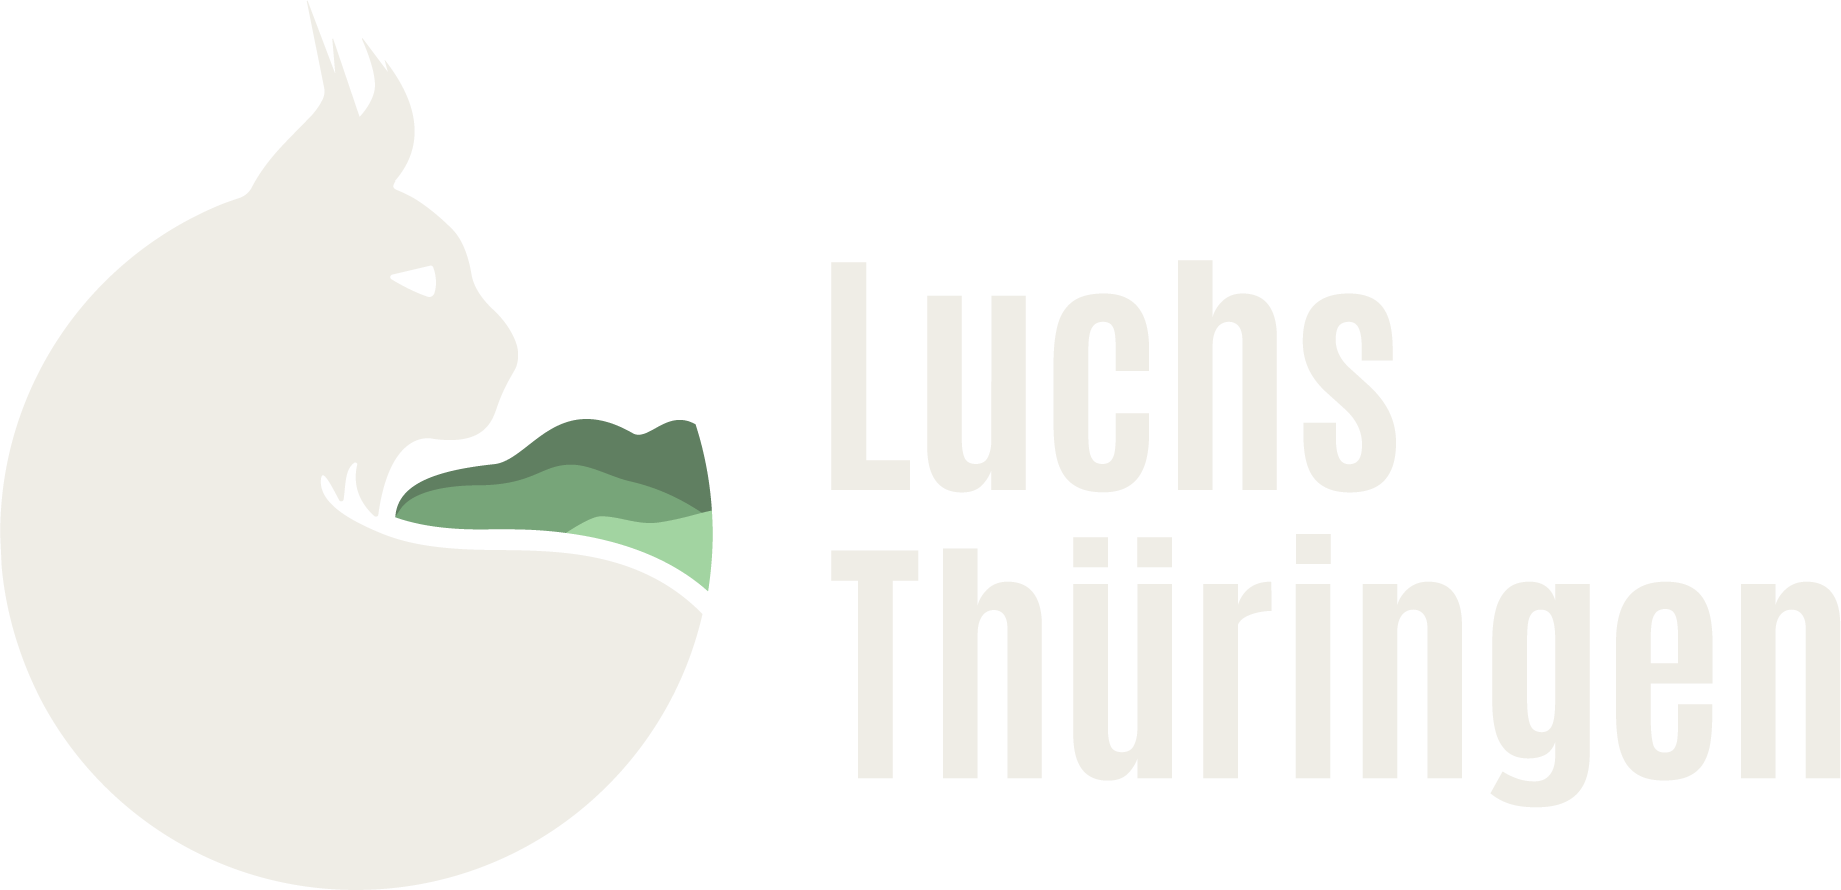 Logo Luchs Thüringen